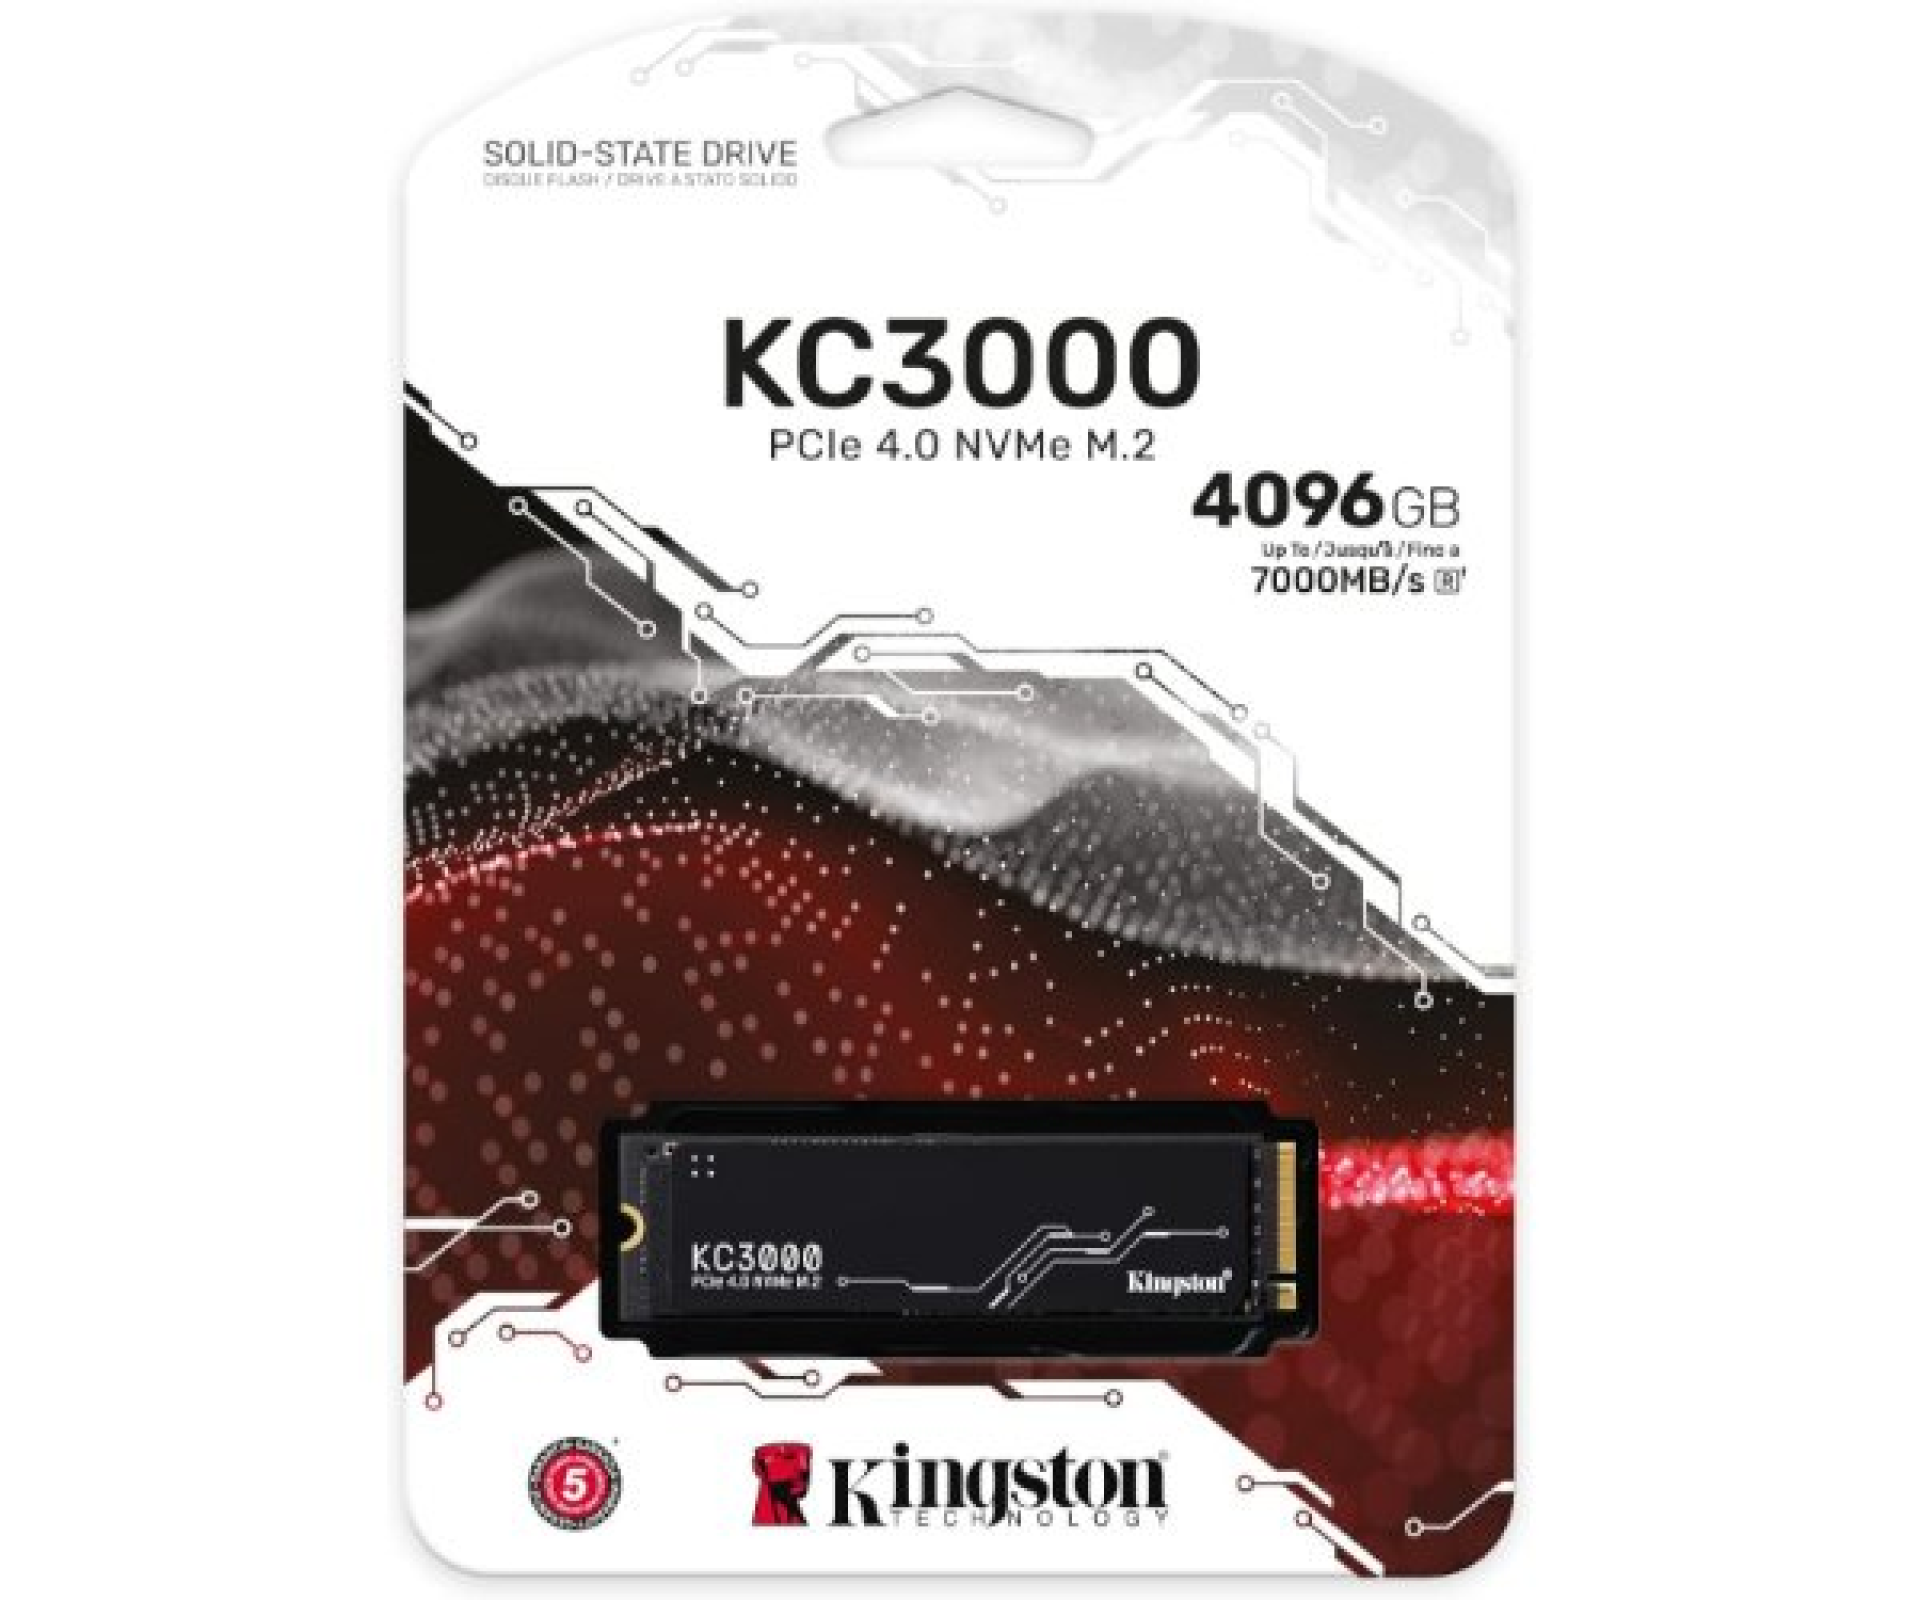 דיסק פנימי Kingston KC3000 4096GB NVME Gen4 7000/7000 R/W